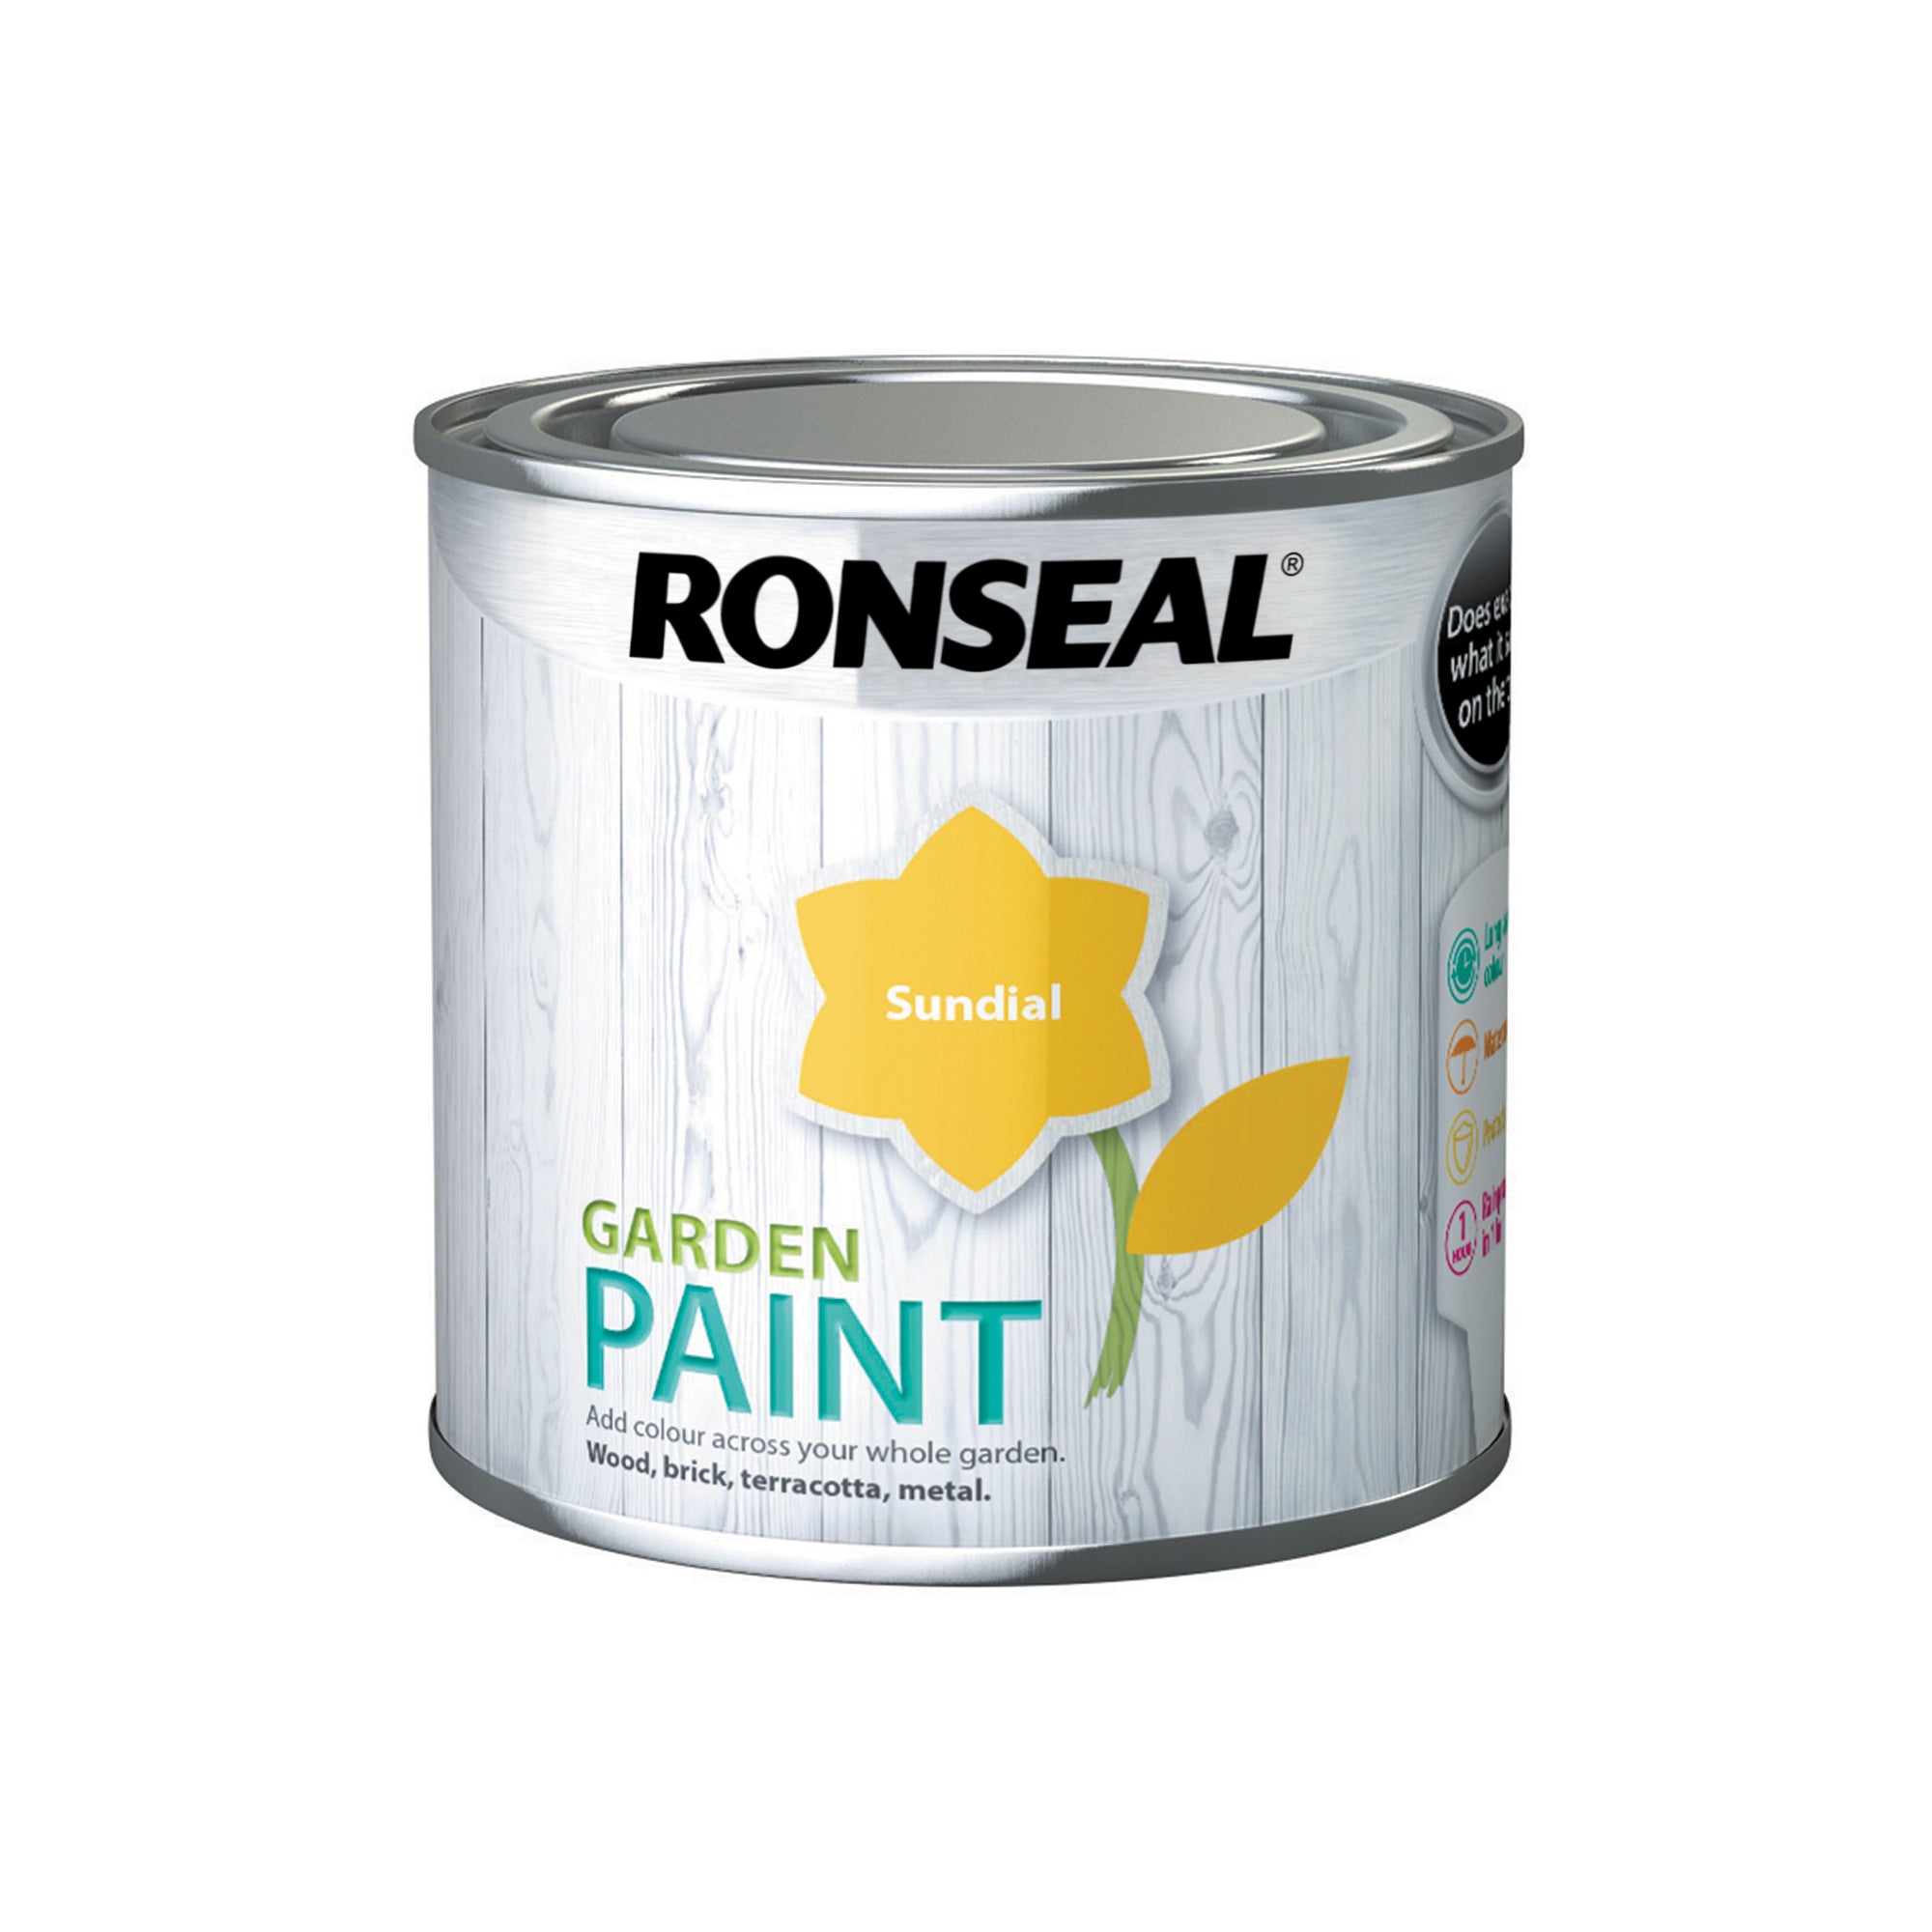 Ronseal-Garden-Paint-Sundial-250ml